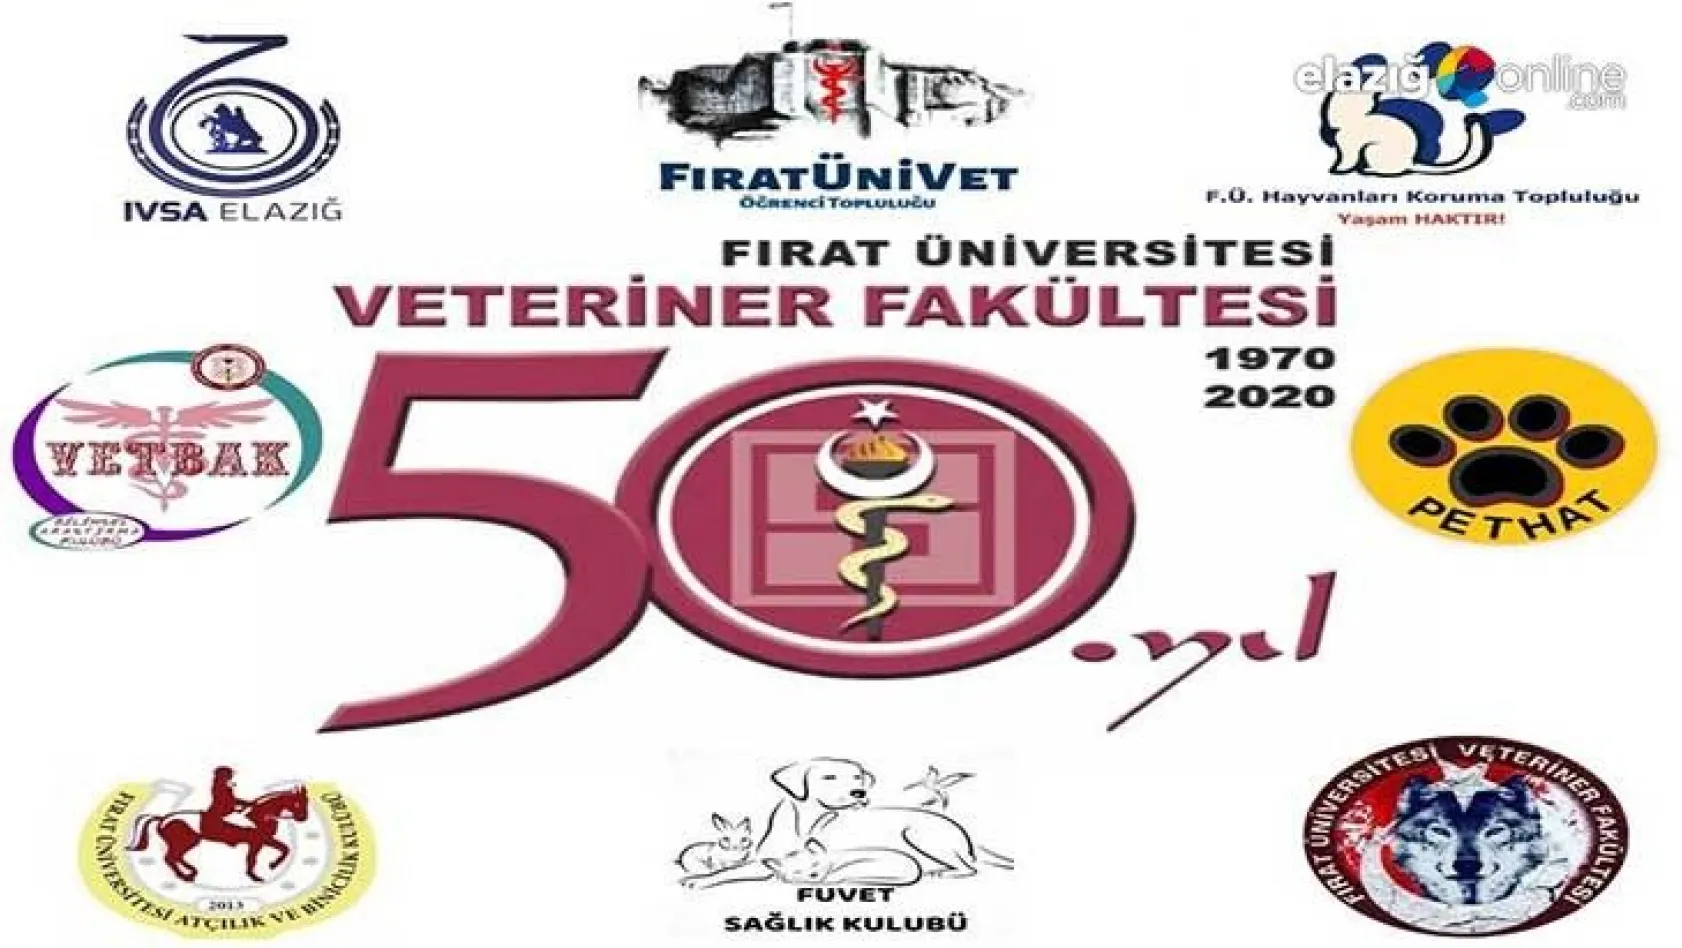 Fırat Üniversitesi Veteriner Fakültesi 50. Kuruluş Yıldönümünü Kutluyor